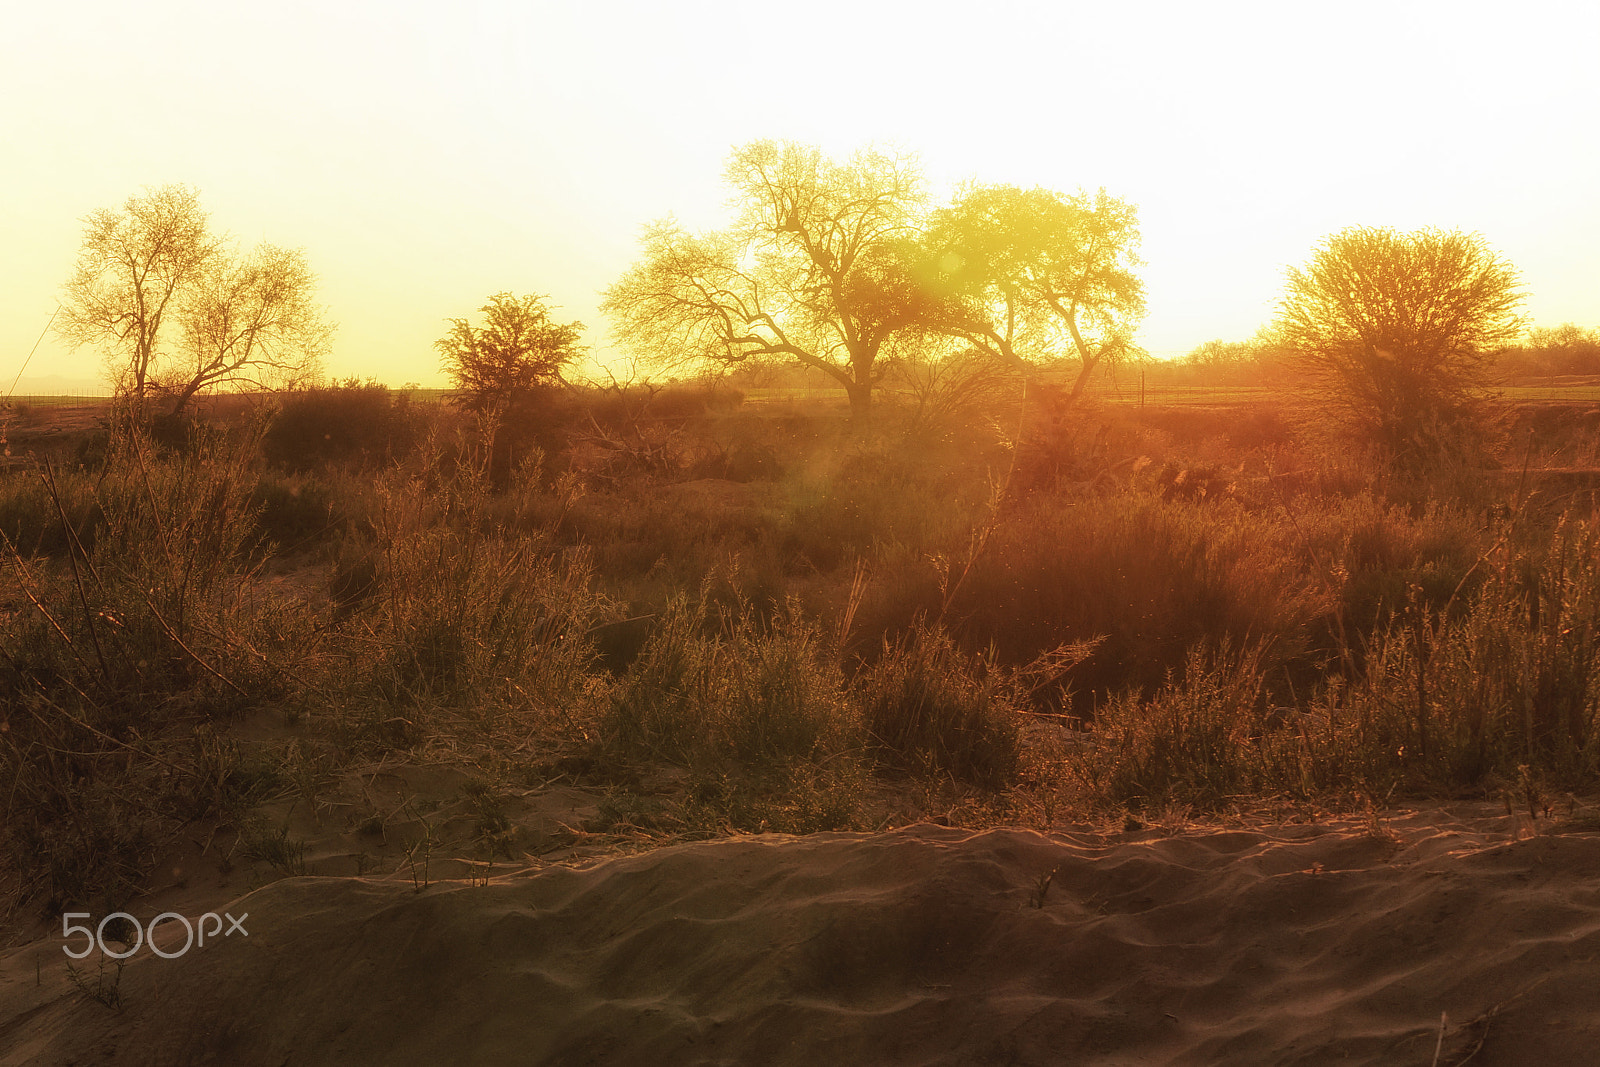 Sony SLT-A57 sample photo. African sundown photography